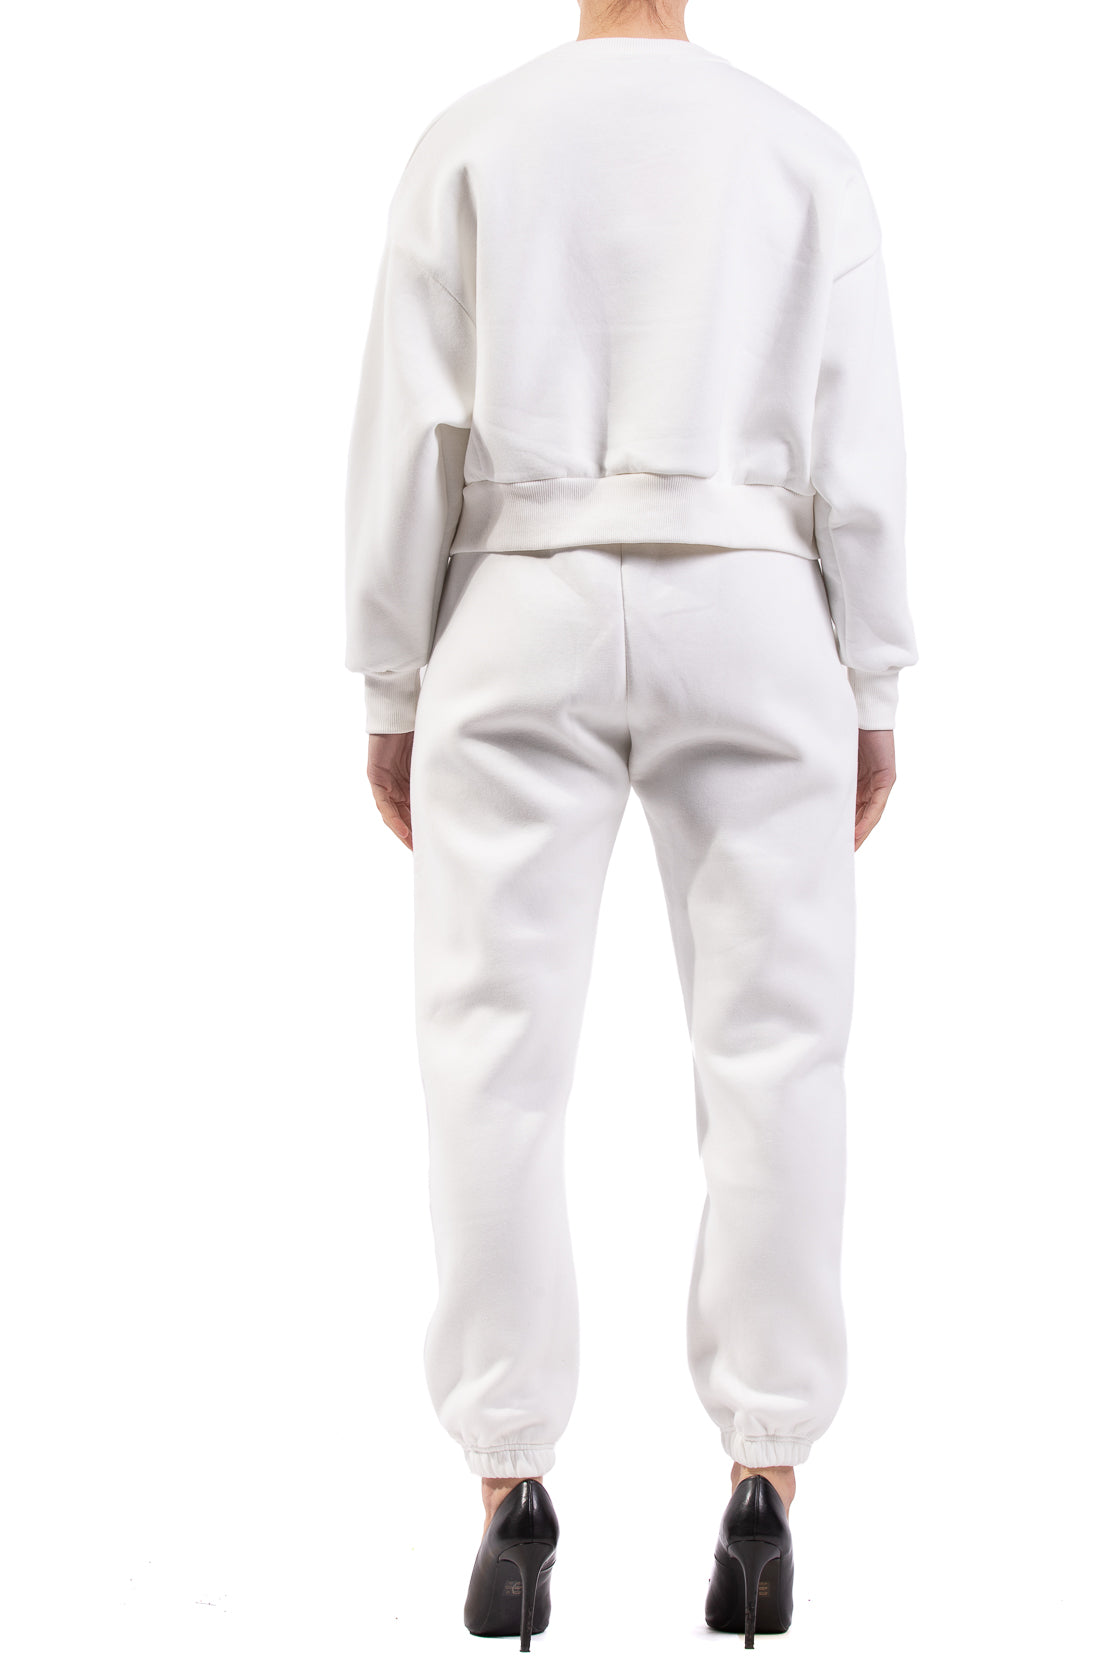 Pantalone tuta Gavroche Paris D825 Bianco regular fit realizzato in cotone.